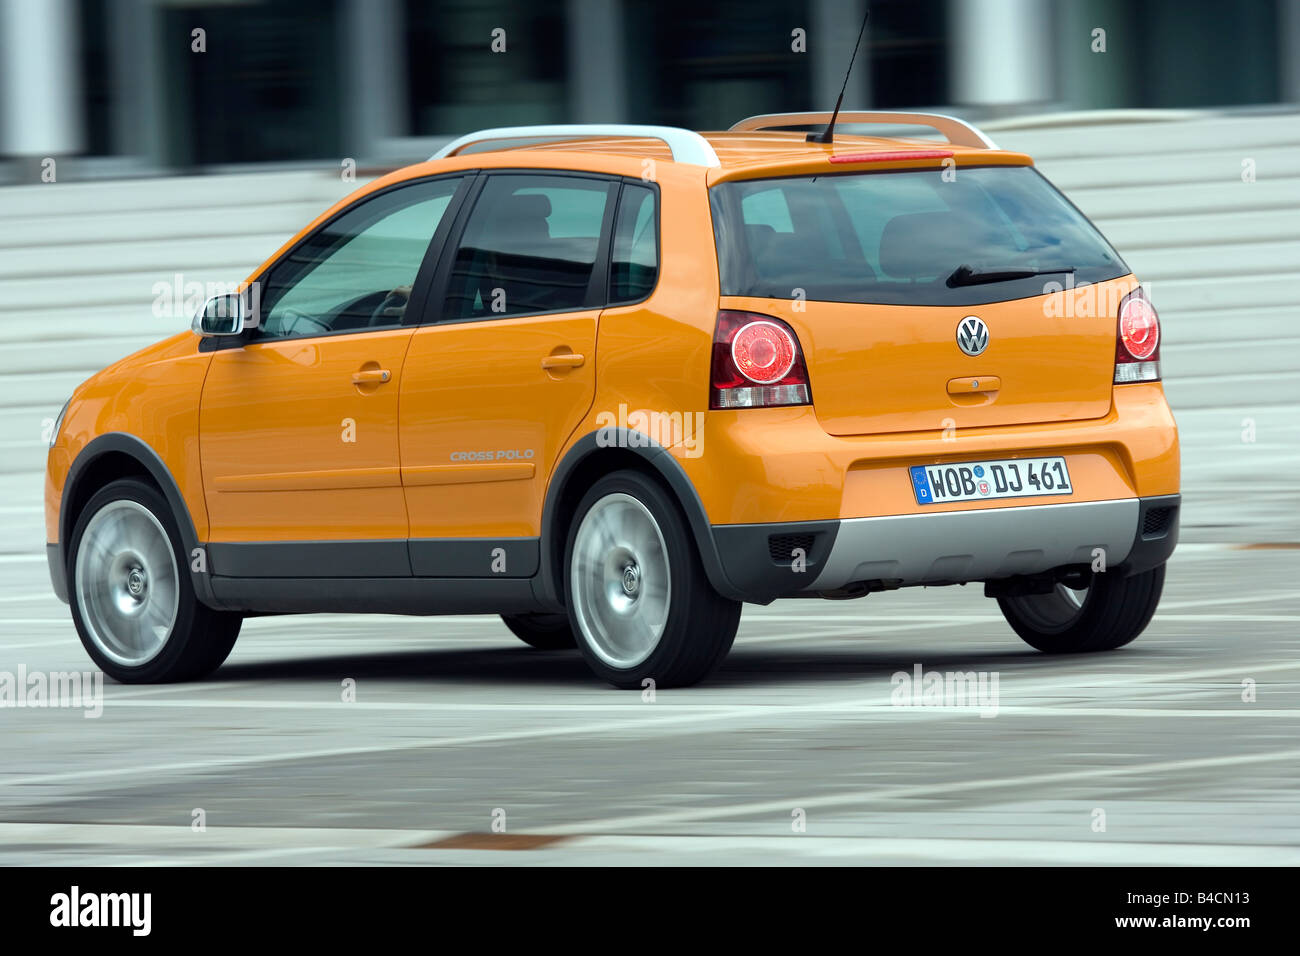 VW Volkswagen Cross Polo 1.4 TDI, Modell Jahr 2006-, orange, fahren, Diagonal von der Rückseite, hintere Ansicht, Stadt Stockfoto